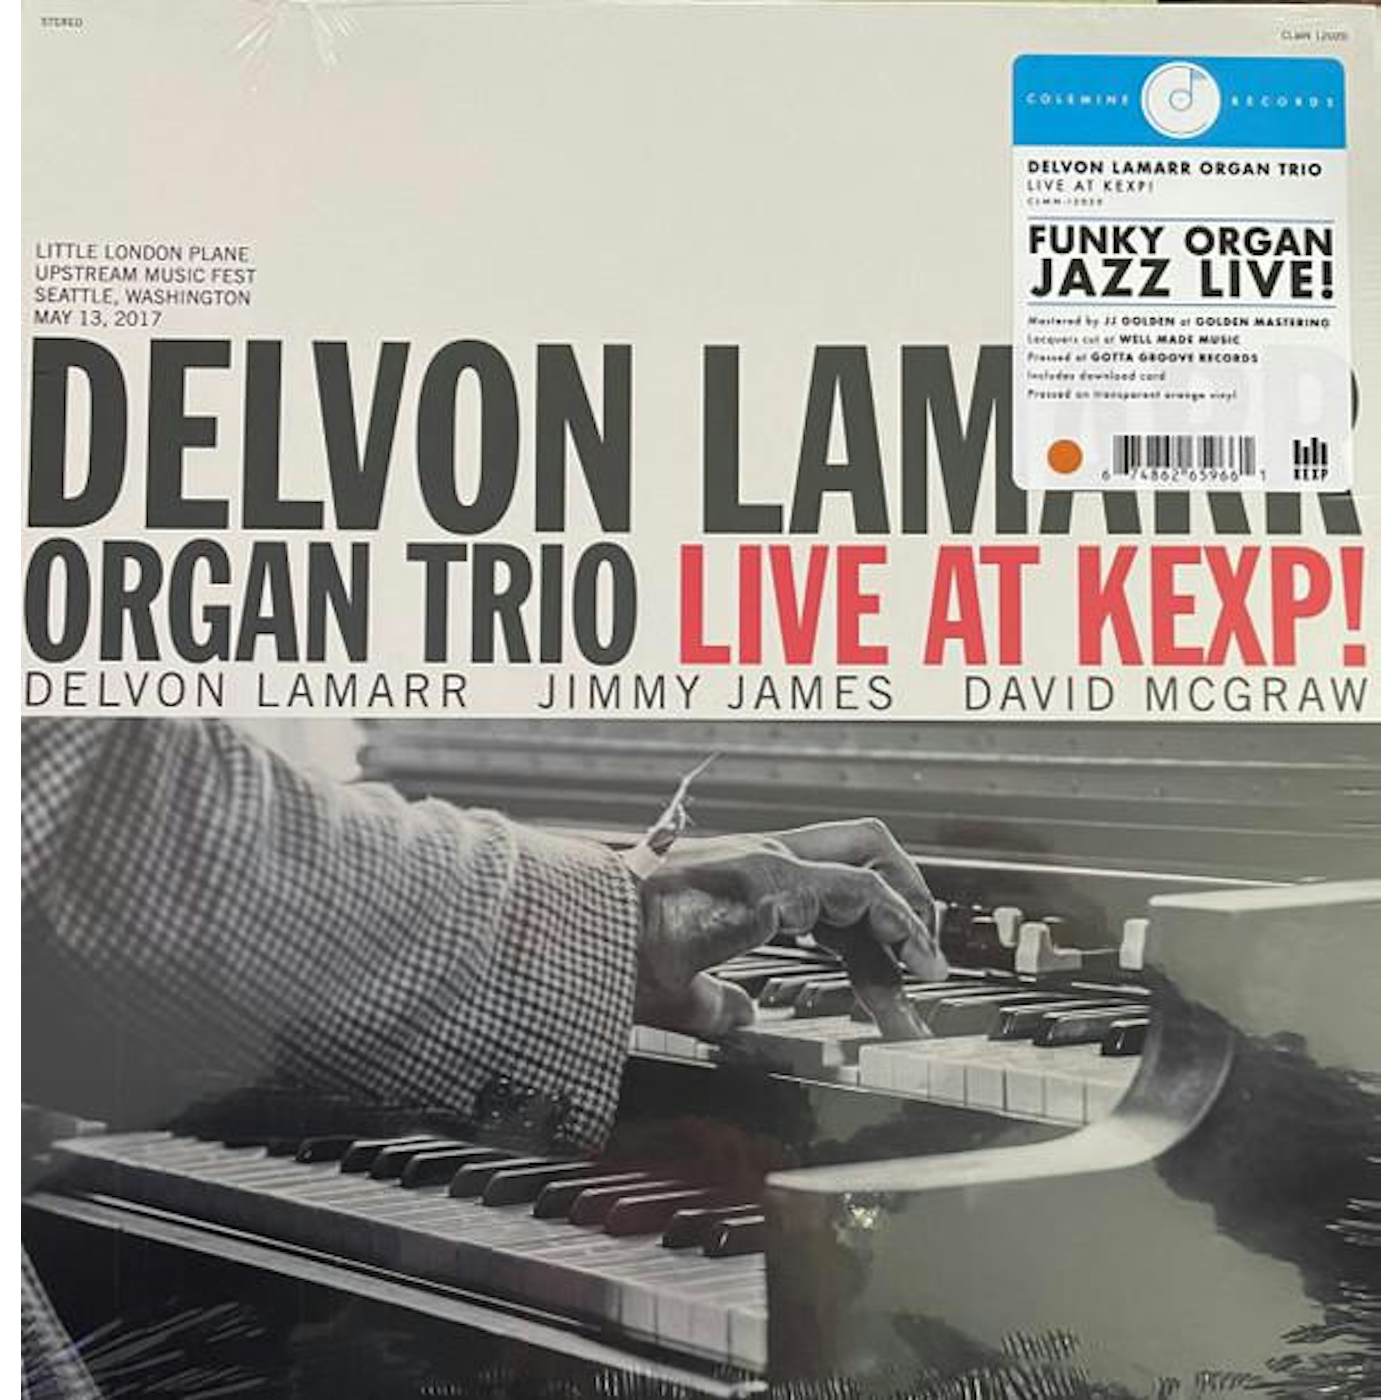 Delvon Lamarr Organ Trio LIVE AT KEXP Vinyl Record